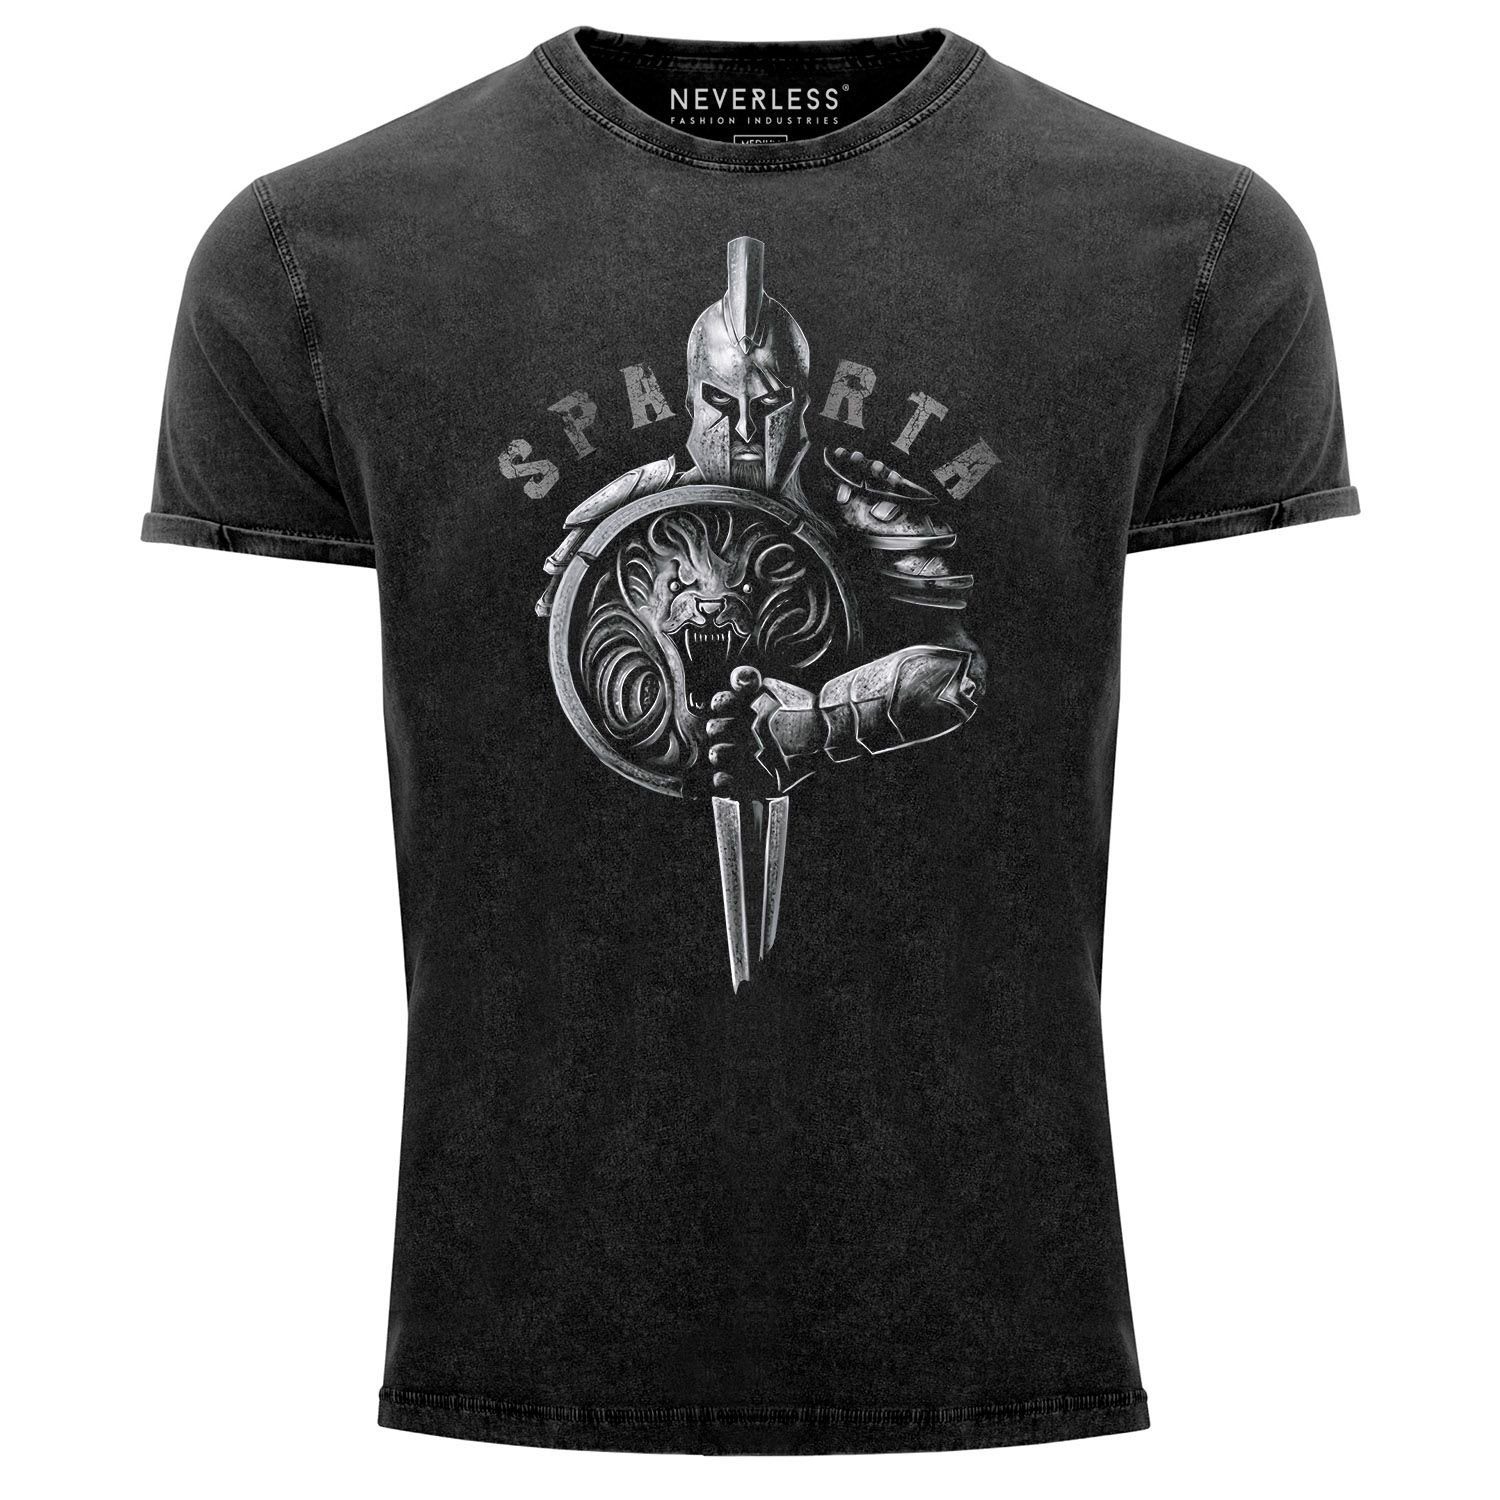 Neverless Print-Shirt Herren Vintage Shirt Aufdruck Sparta Spartaner-helm Krieger Warrior Schwert Schild Löwe Printshirt T-Shirt Used Look Slim Fit Neverless® mit Print